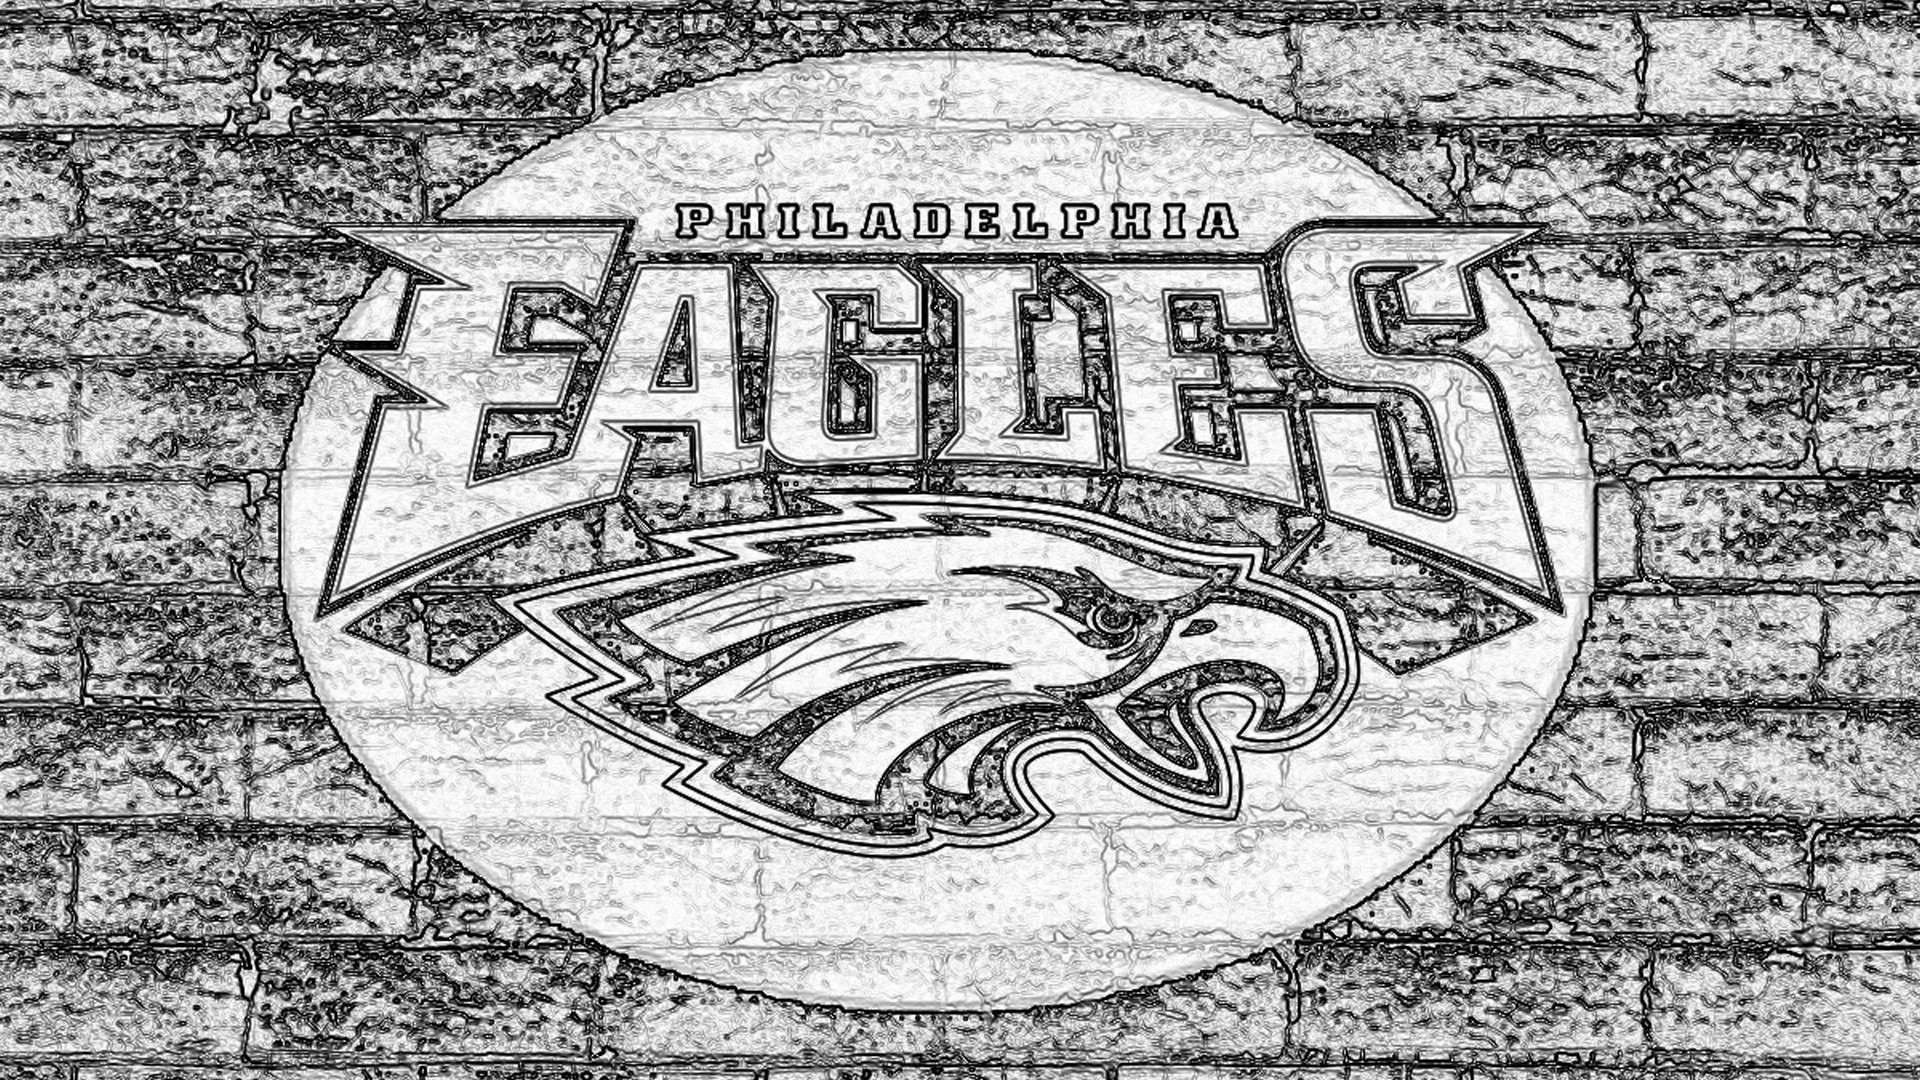 Philadelphia Eagles Nfl HD Image